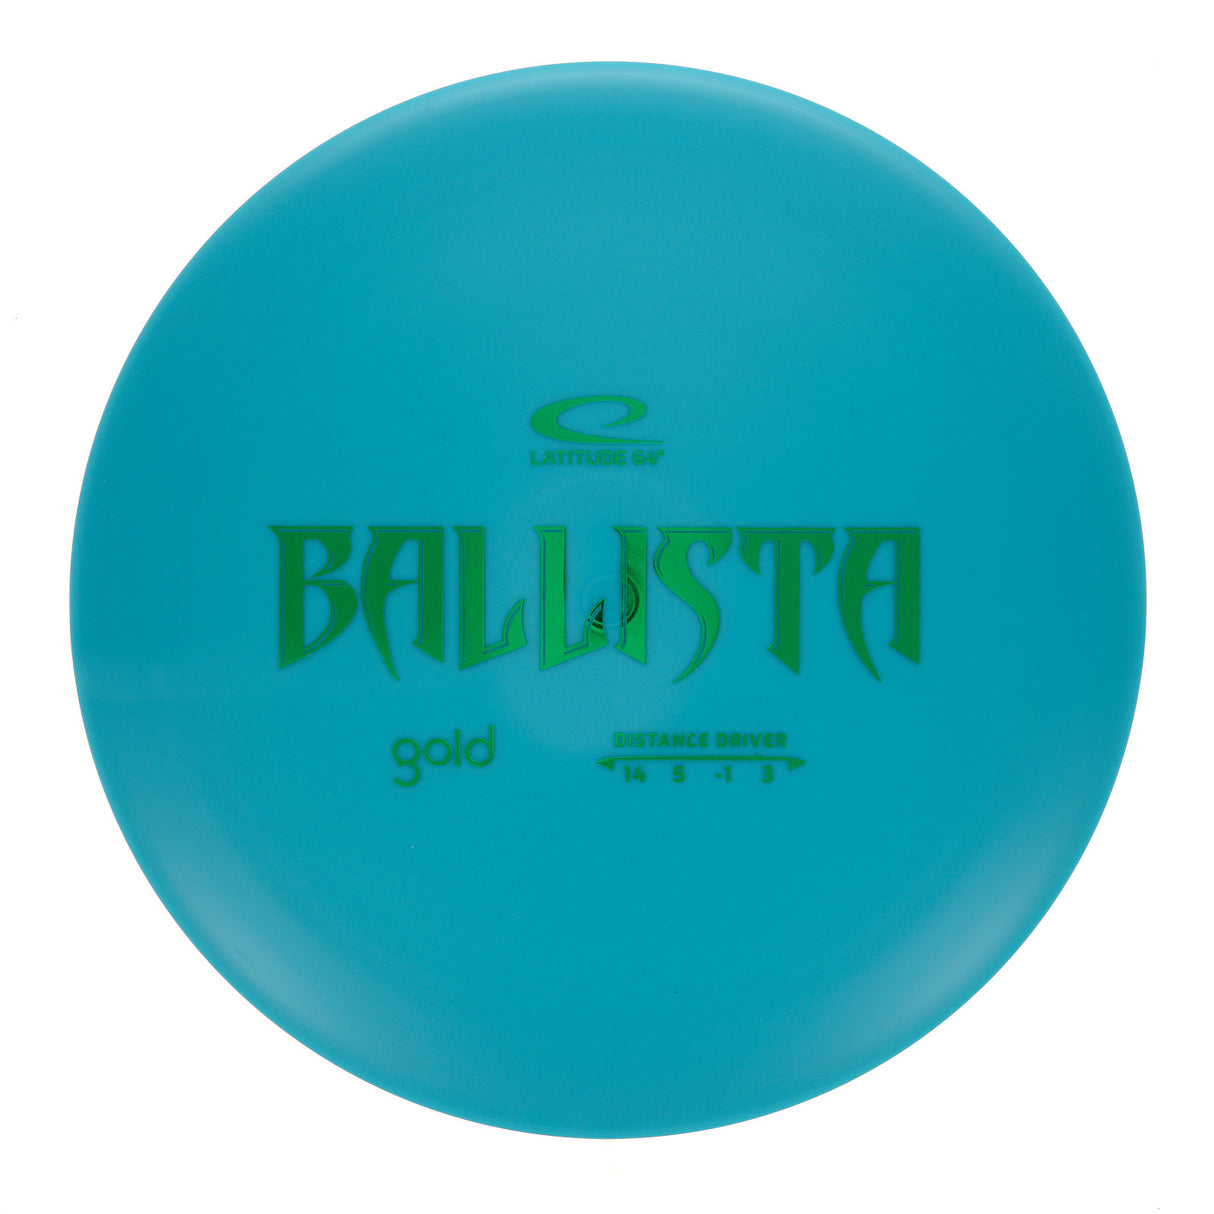 Latitude 64 Ballista - Gold 173g | Style 0002